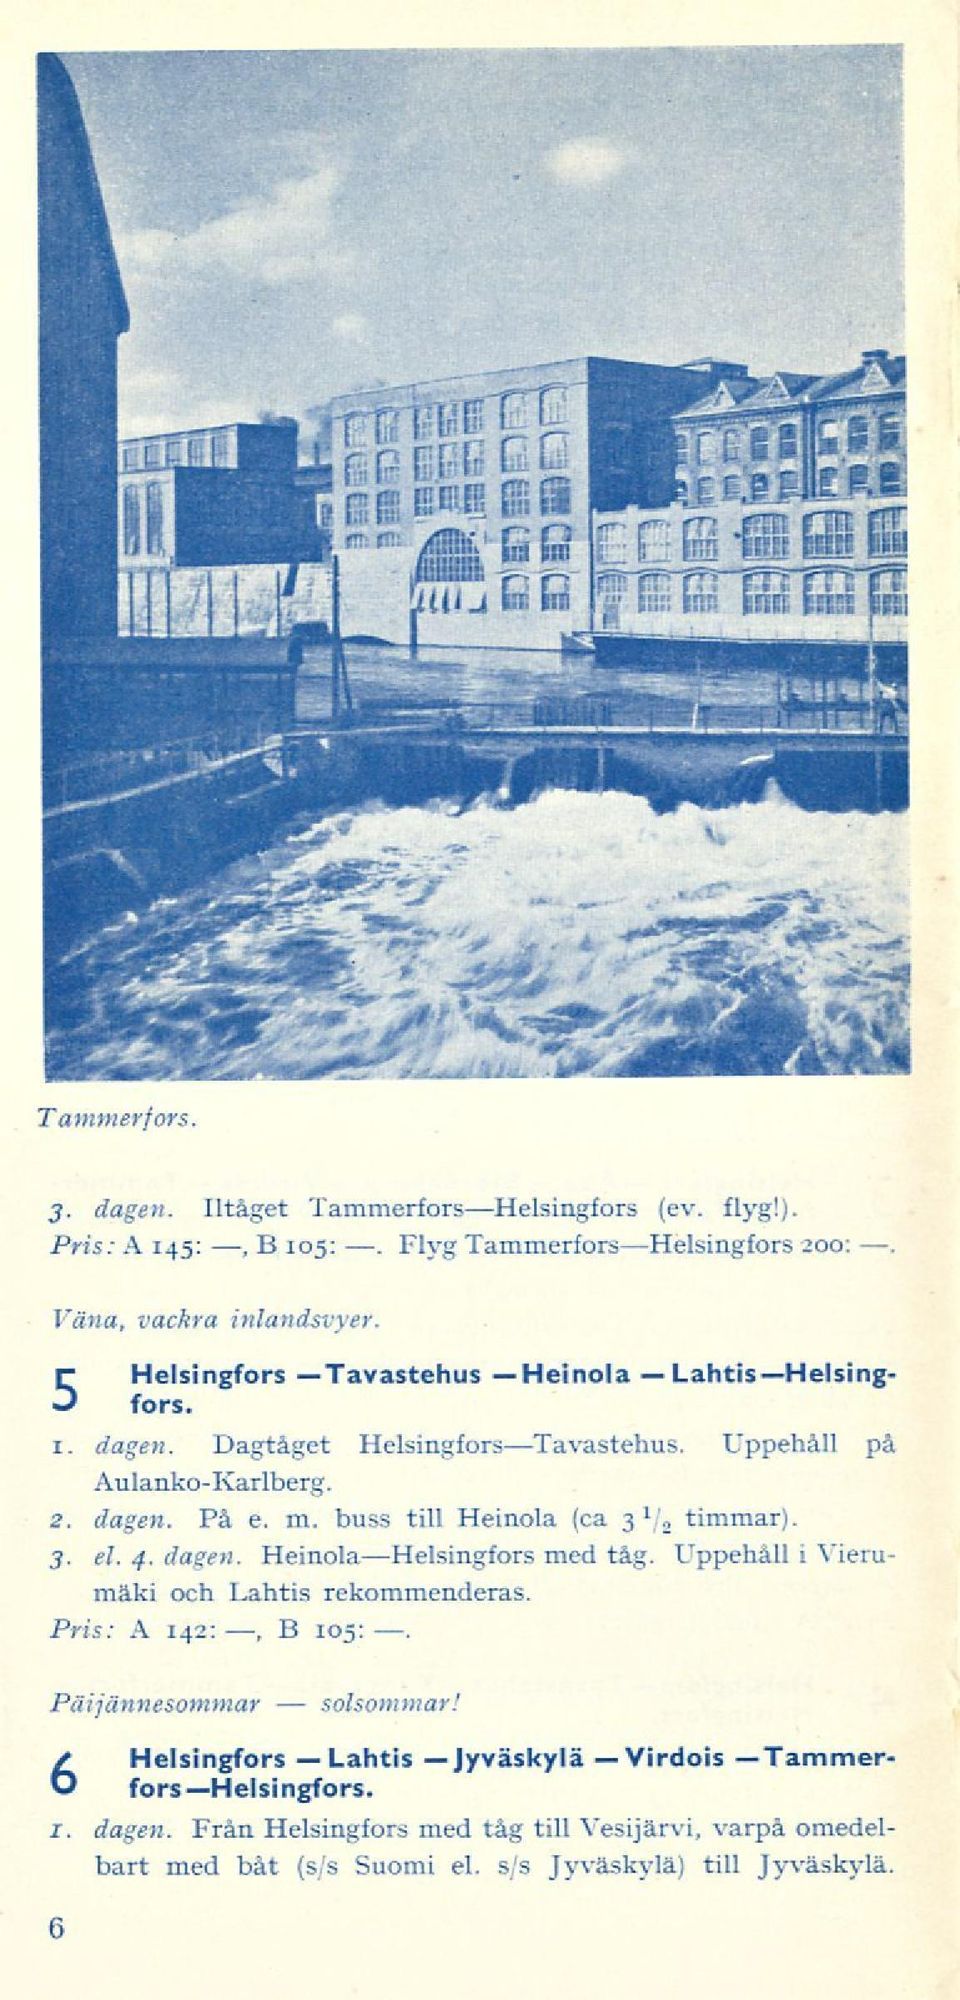 buss till Heinola (ca 3 1, timmar). 3. el. 4. dagen. HeinolaHelsingfors med tåg. Uppehåll i Vierumäki och Lahtis rekommenderas. Pris: A 142:, B 105:.